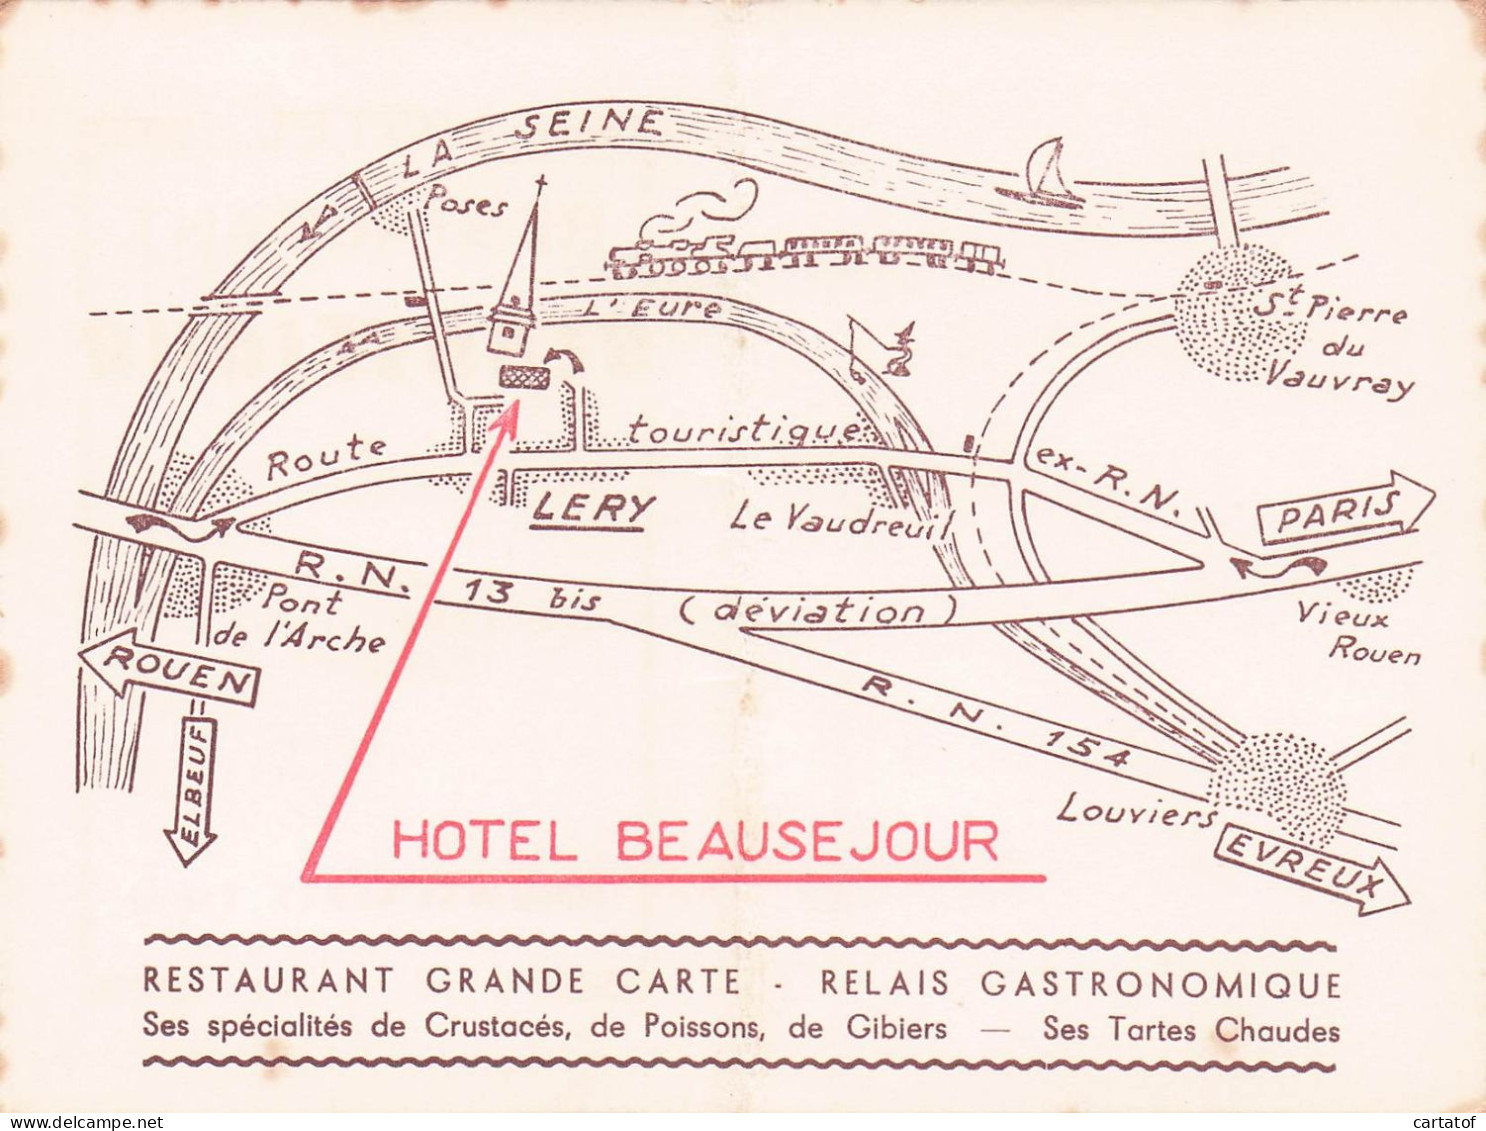 Hôtel Restaurant BEAUSEJOUR .  LERY . LAUWELAERTS Franz - Cartes D'hotel